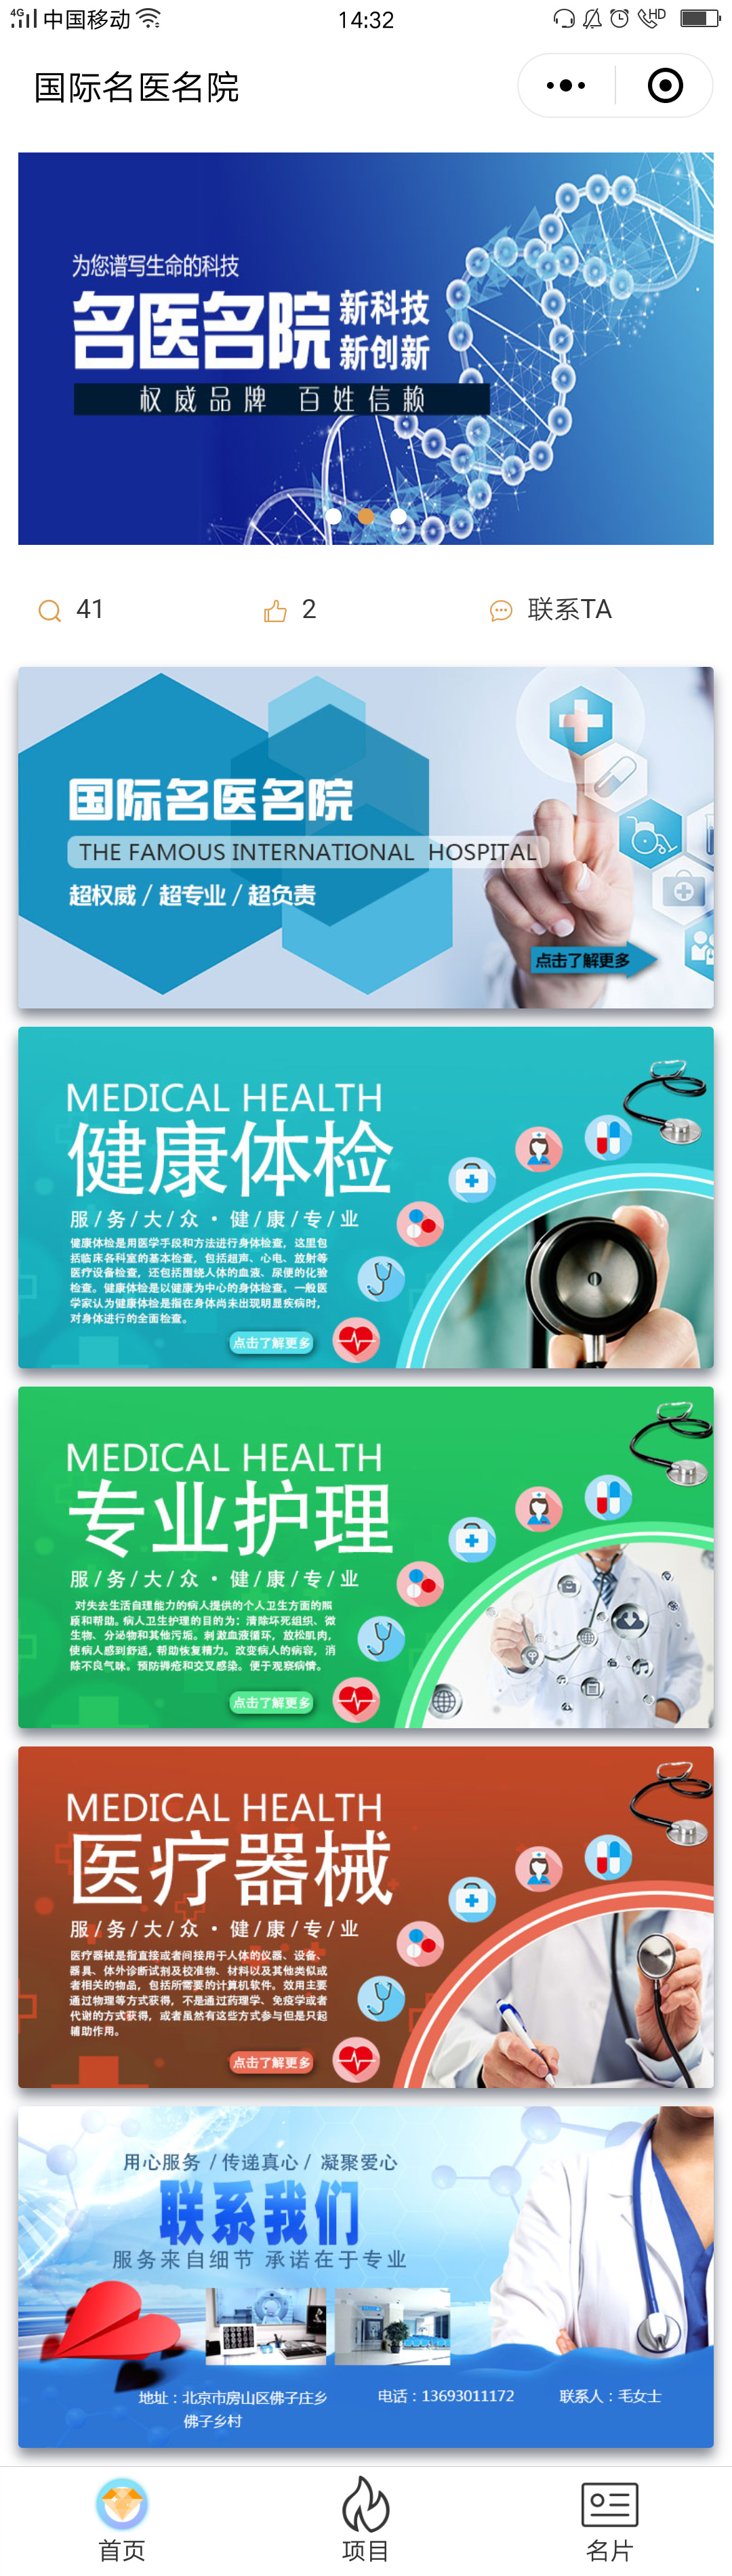 医疗蓝色北京-国际名医名院商标小程序高级版.jpg